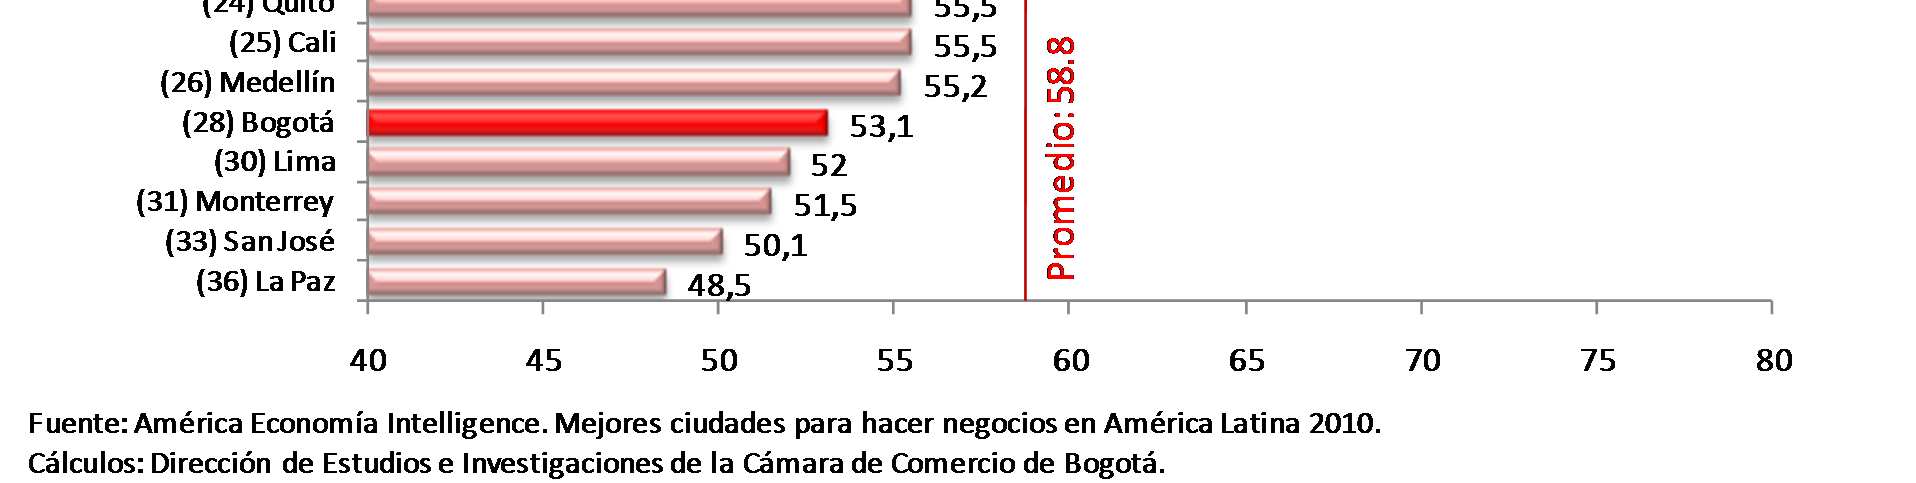 En Servicios a las empresas, Bogotá se ubicó en la posición 28 y la superan las principales ciudades de América Latina, e incluso es superada por ciudades como Medellín,